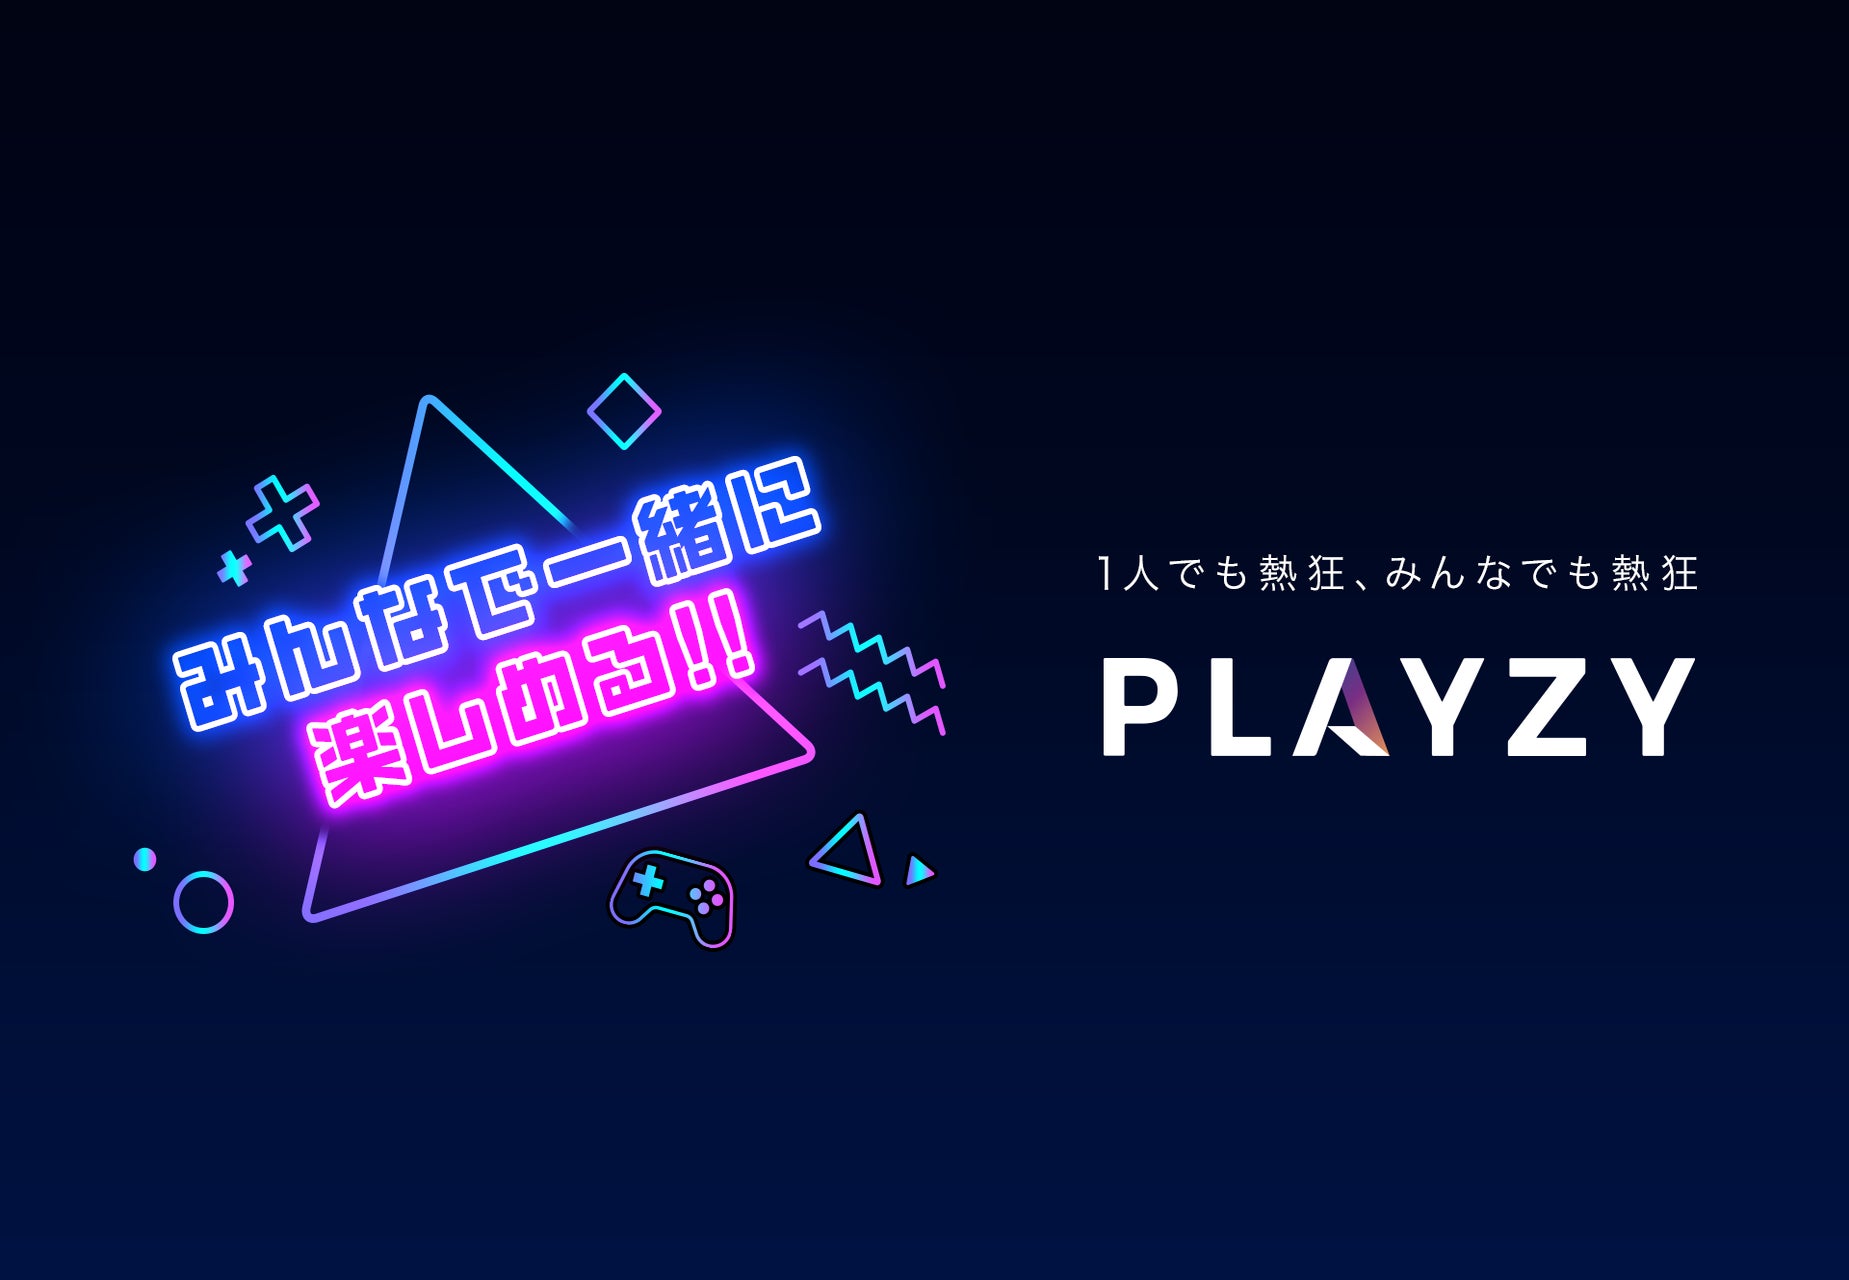 国内最大級のゲーム総合情報サイトを運営するゲームエイト、インフルエンサーとファンが一緒に盛り上がれるコミュニティプラットフォーム「PLAYZY」を7月27日提供開始！